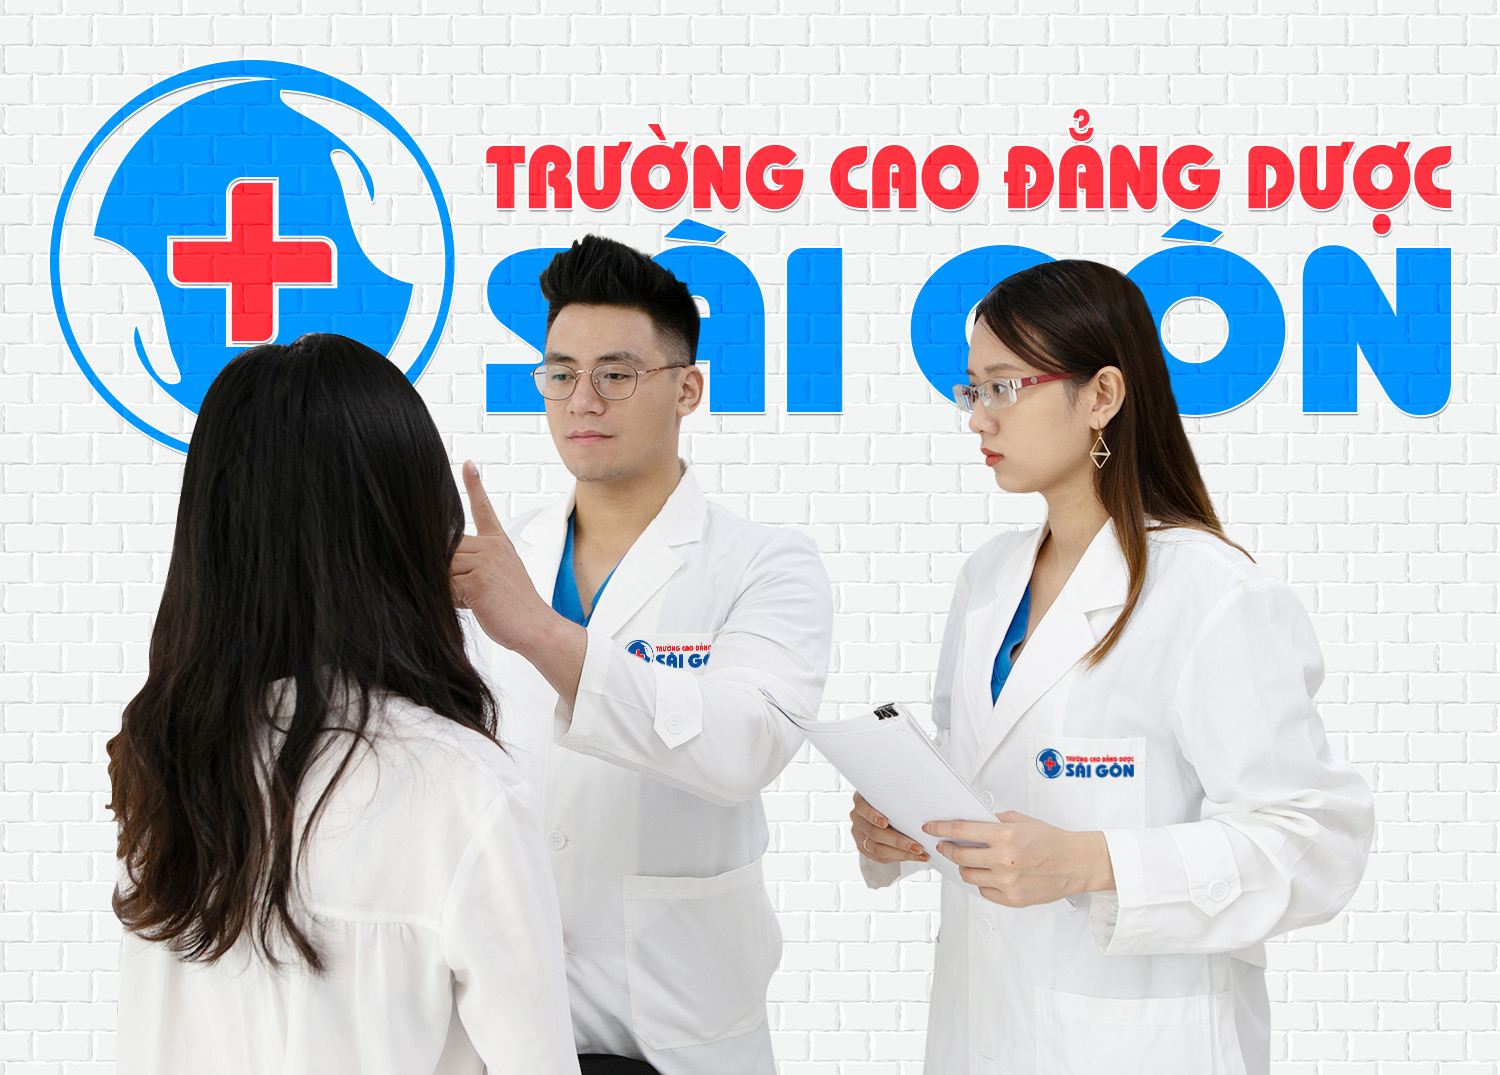 Chuyên gia Dược Sài Gòn hướng dẫn dùng thuốc Aspirin